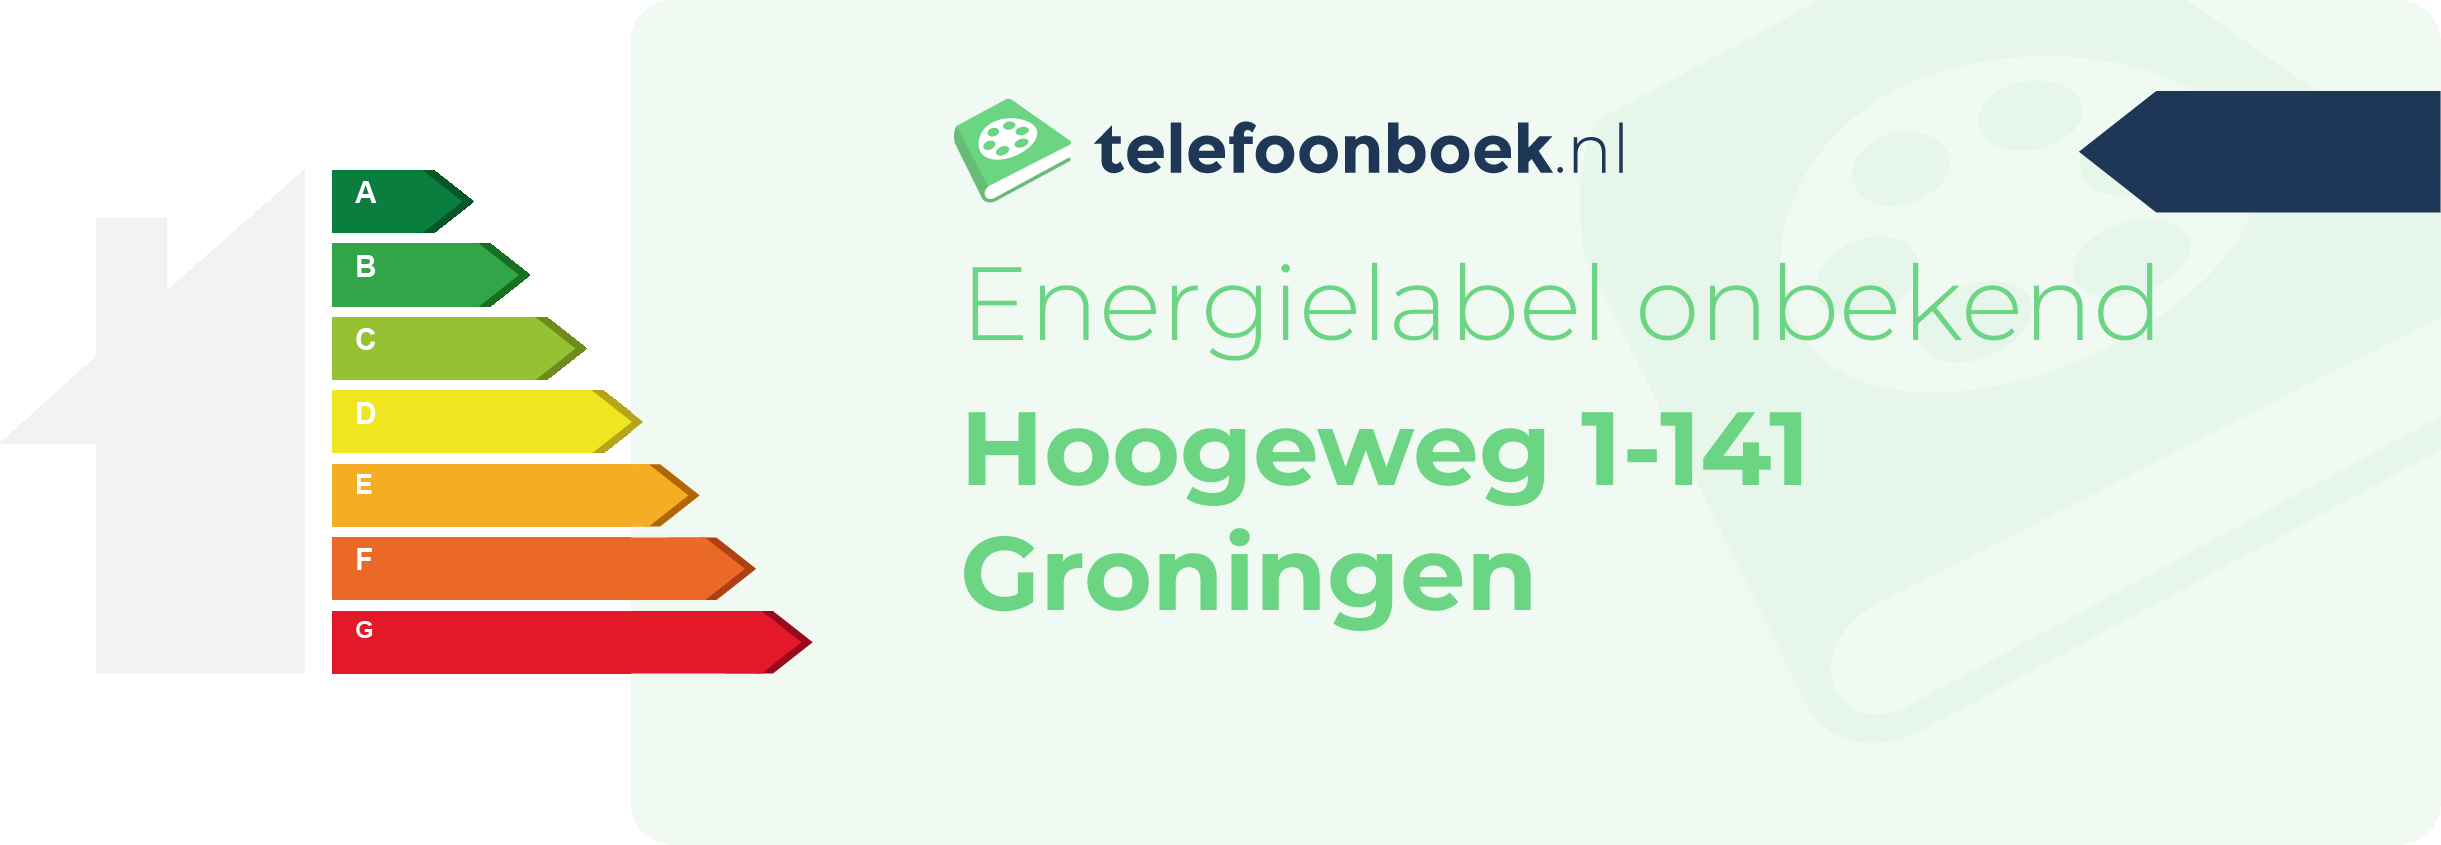 Energielabel Hoogeweg 1-141 Groningen